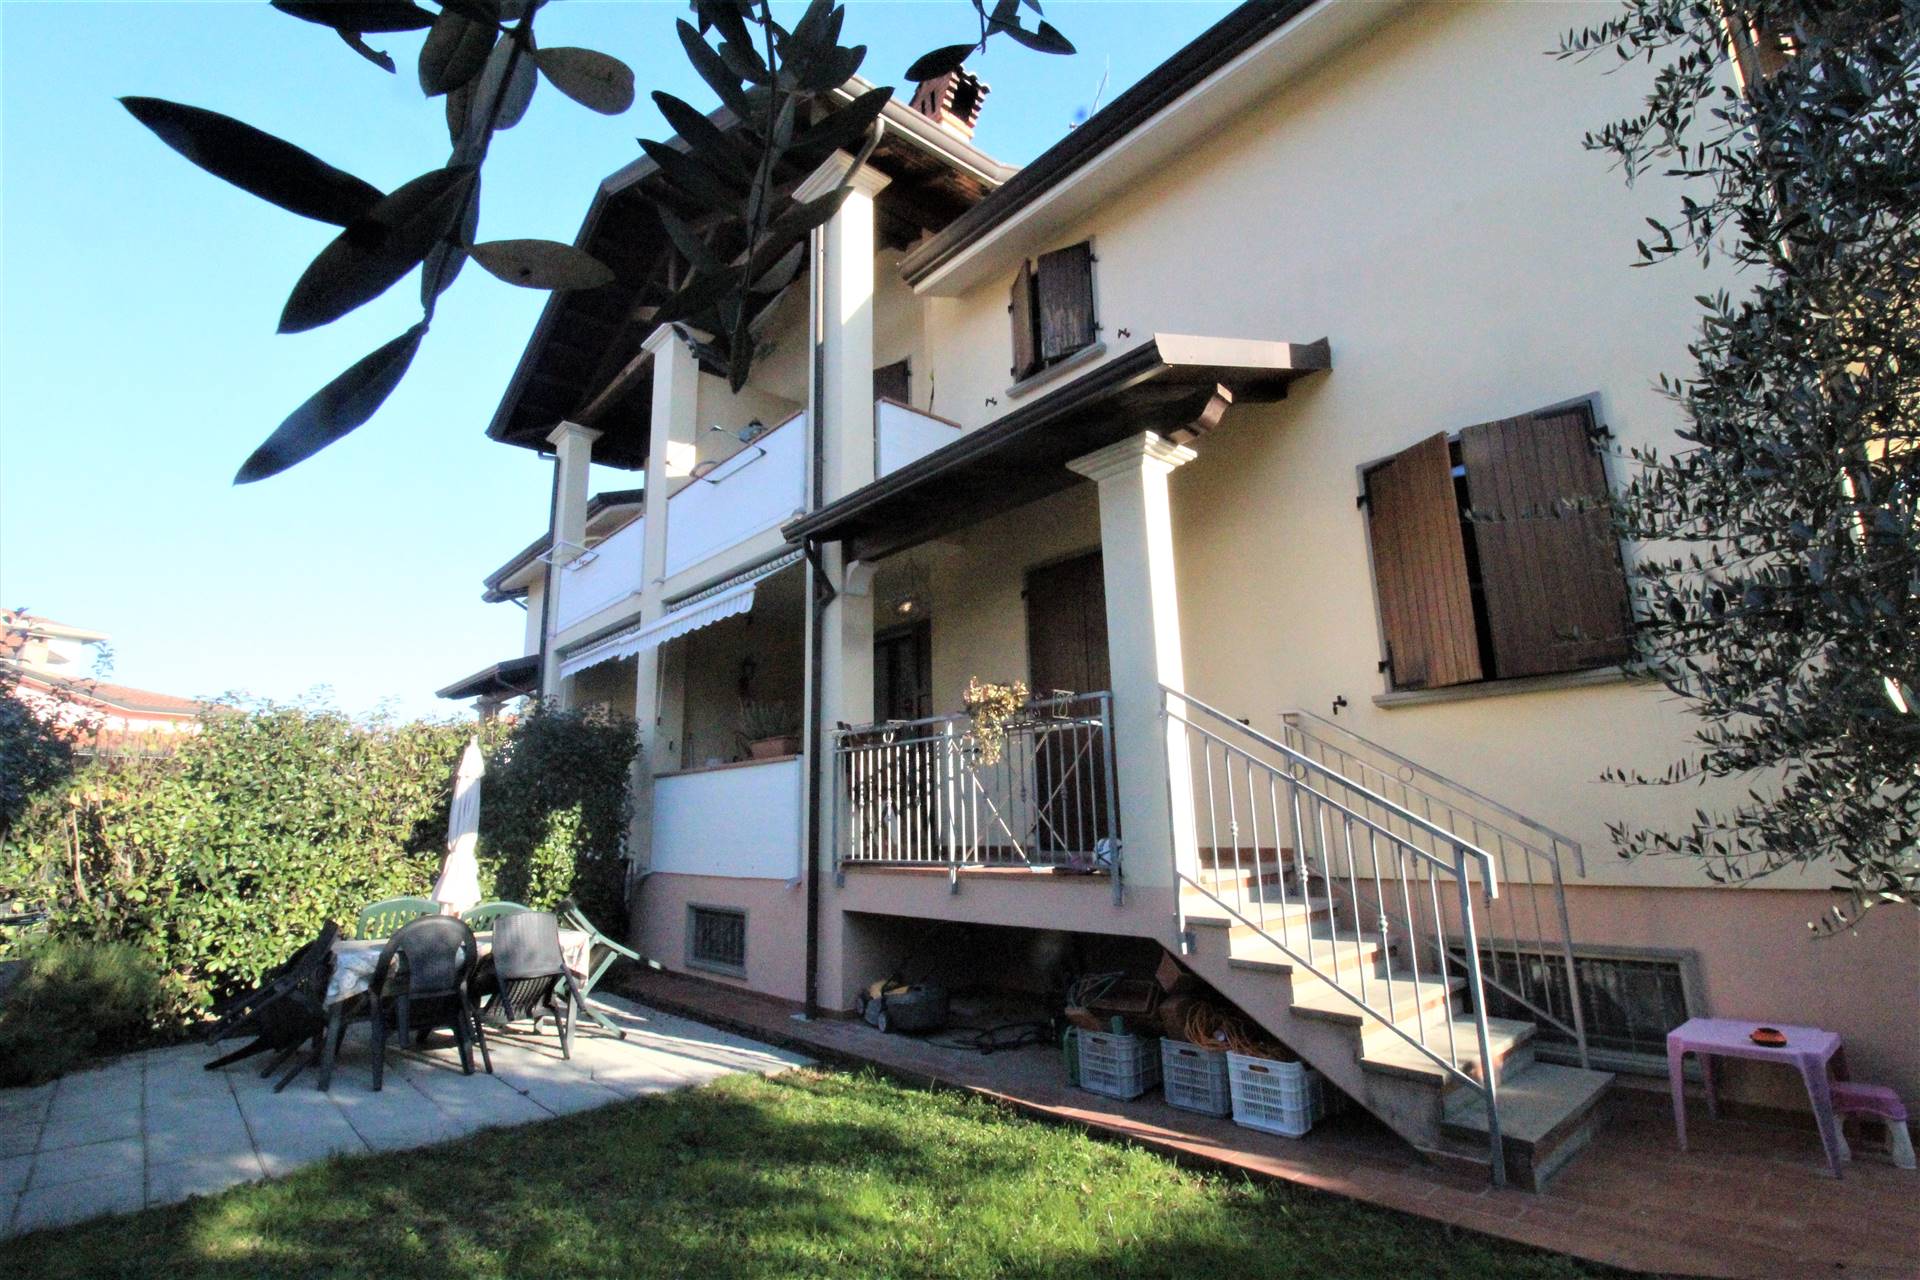 Villa Bifamiliare in vendita a Aulla, 7 locali, prezzo € 270.000 | PortaleAgenzieImmobiliari.it